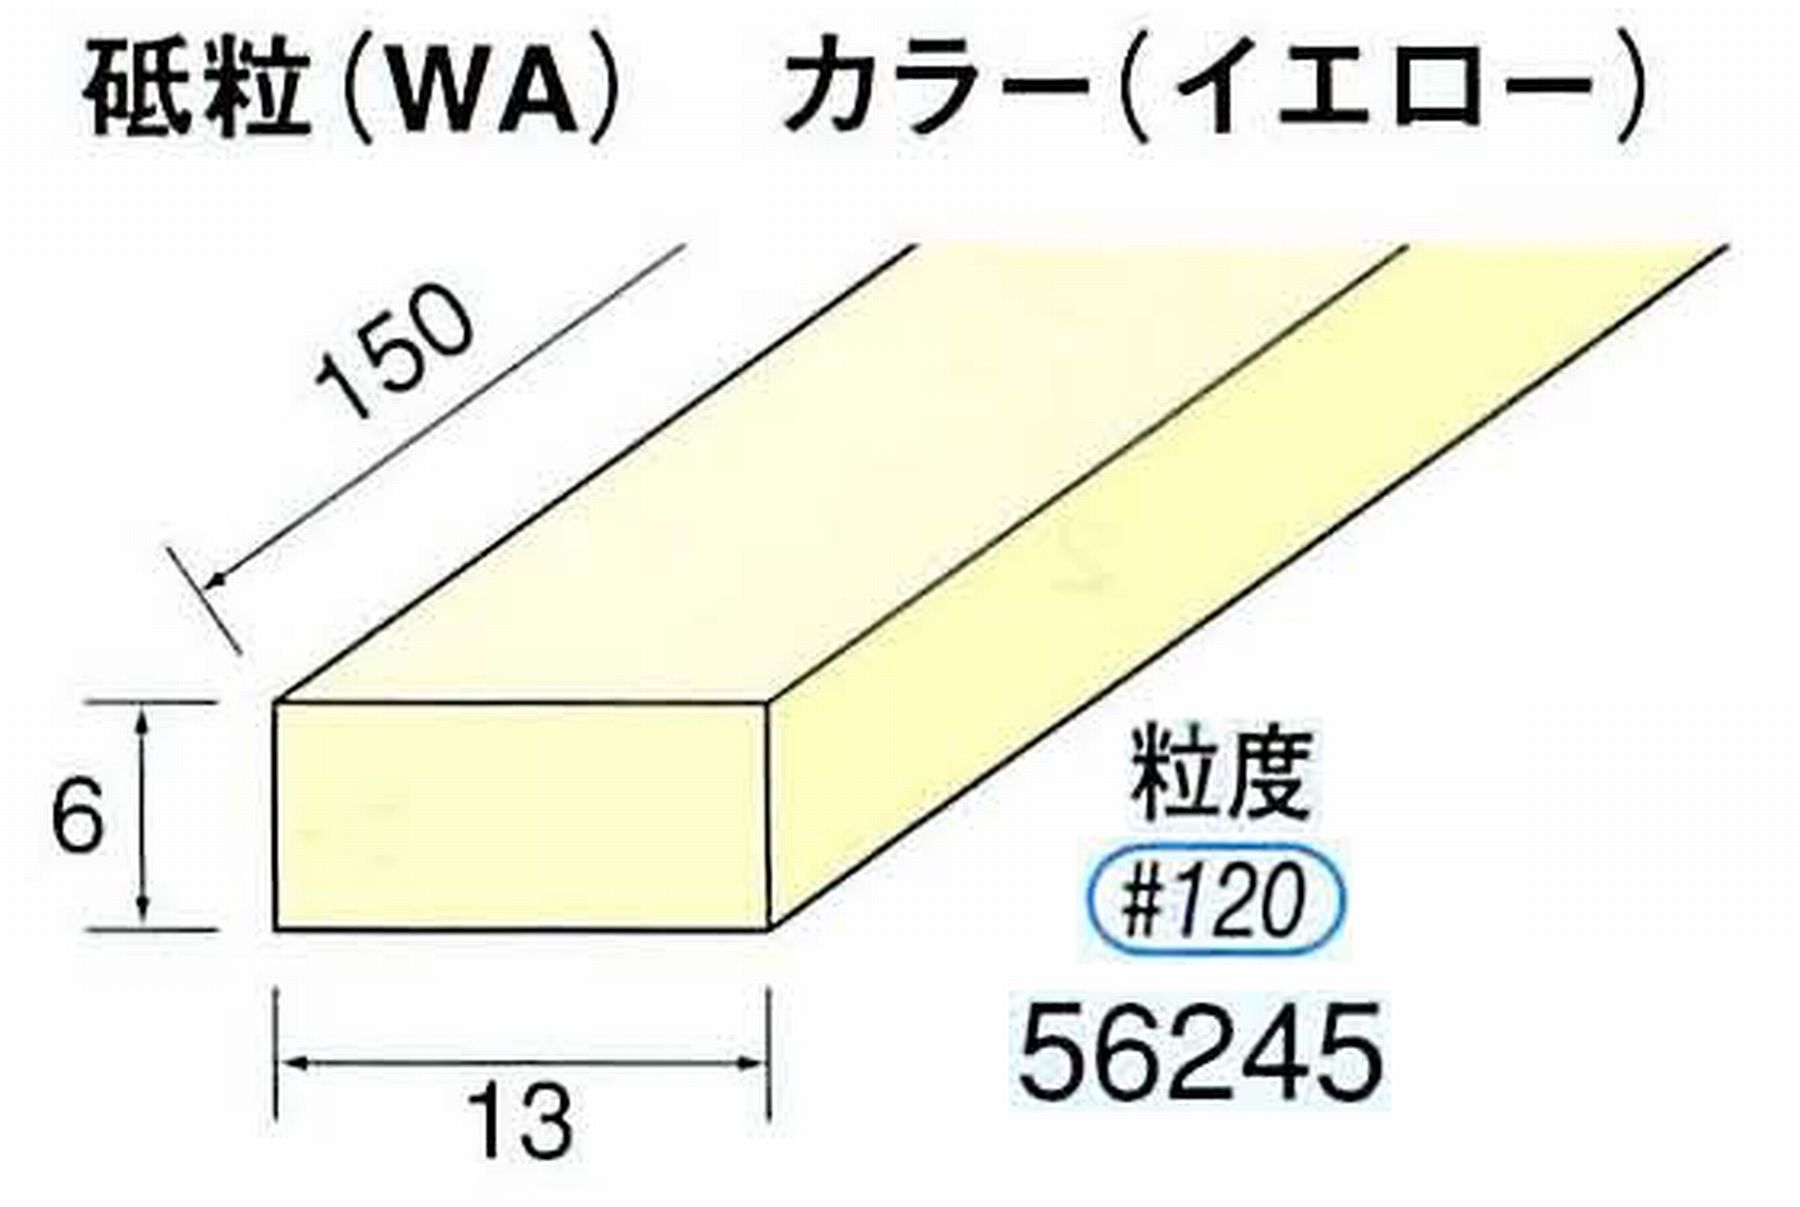 ナカニシ/NAKANISHI スティック砥石 イエロー・フィニッシュシリーズ 砥粒(WA) 56245